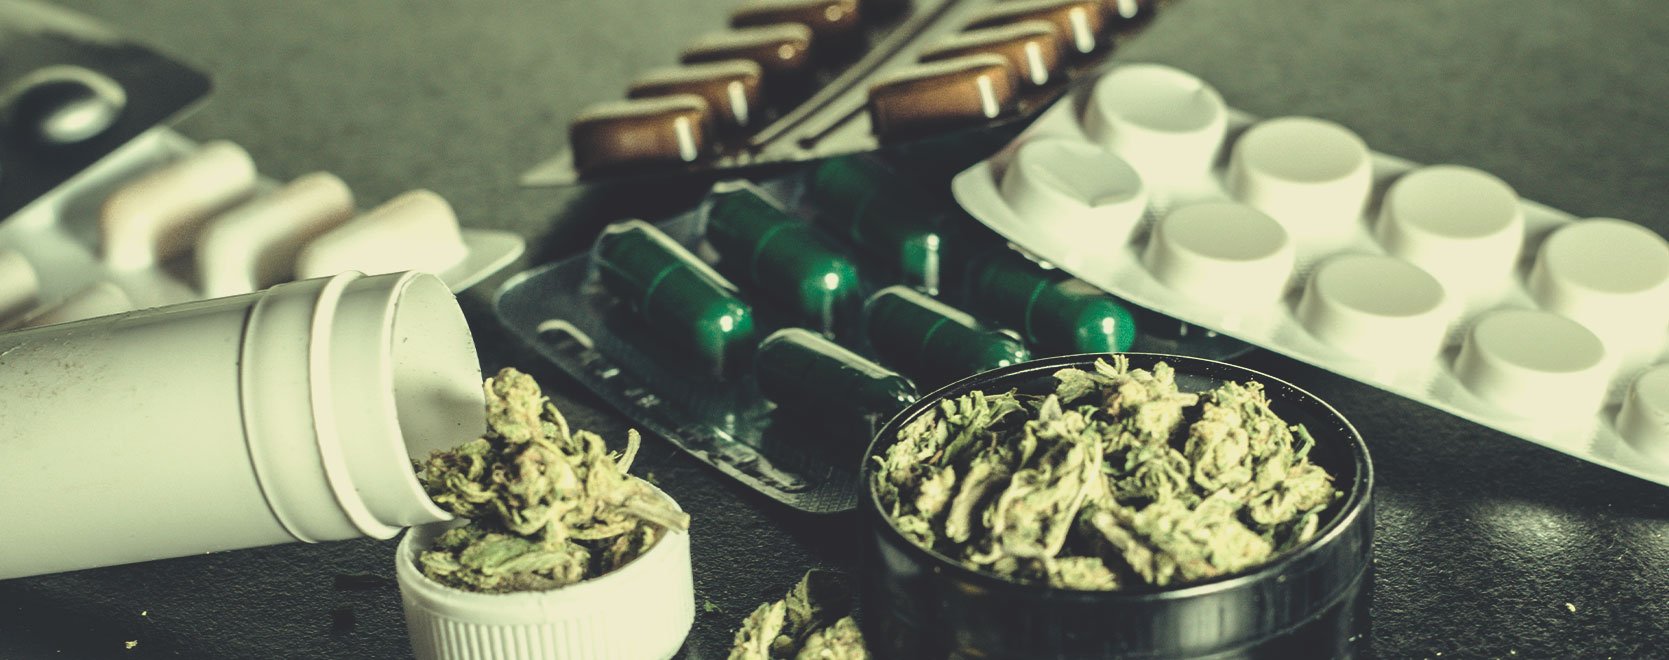 Qu’est-ce qui pousse un toxicomane à choisir le cannabis comme substitut ?